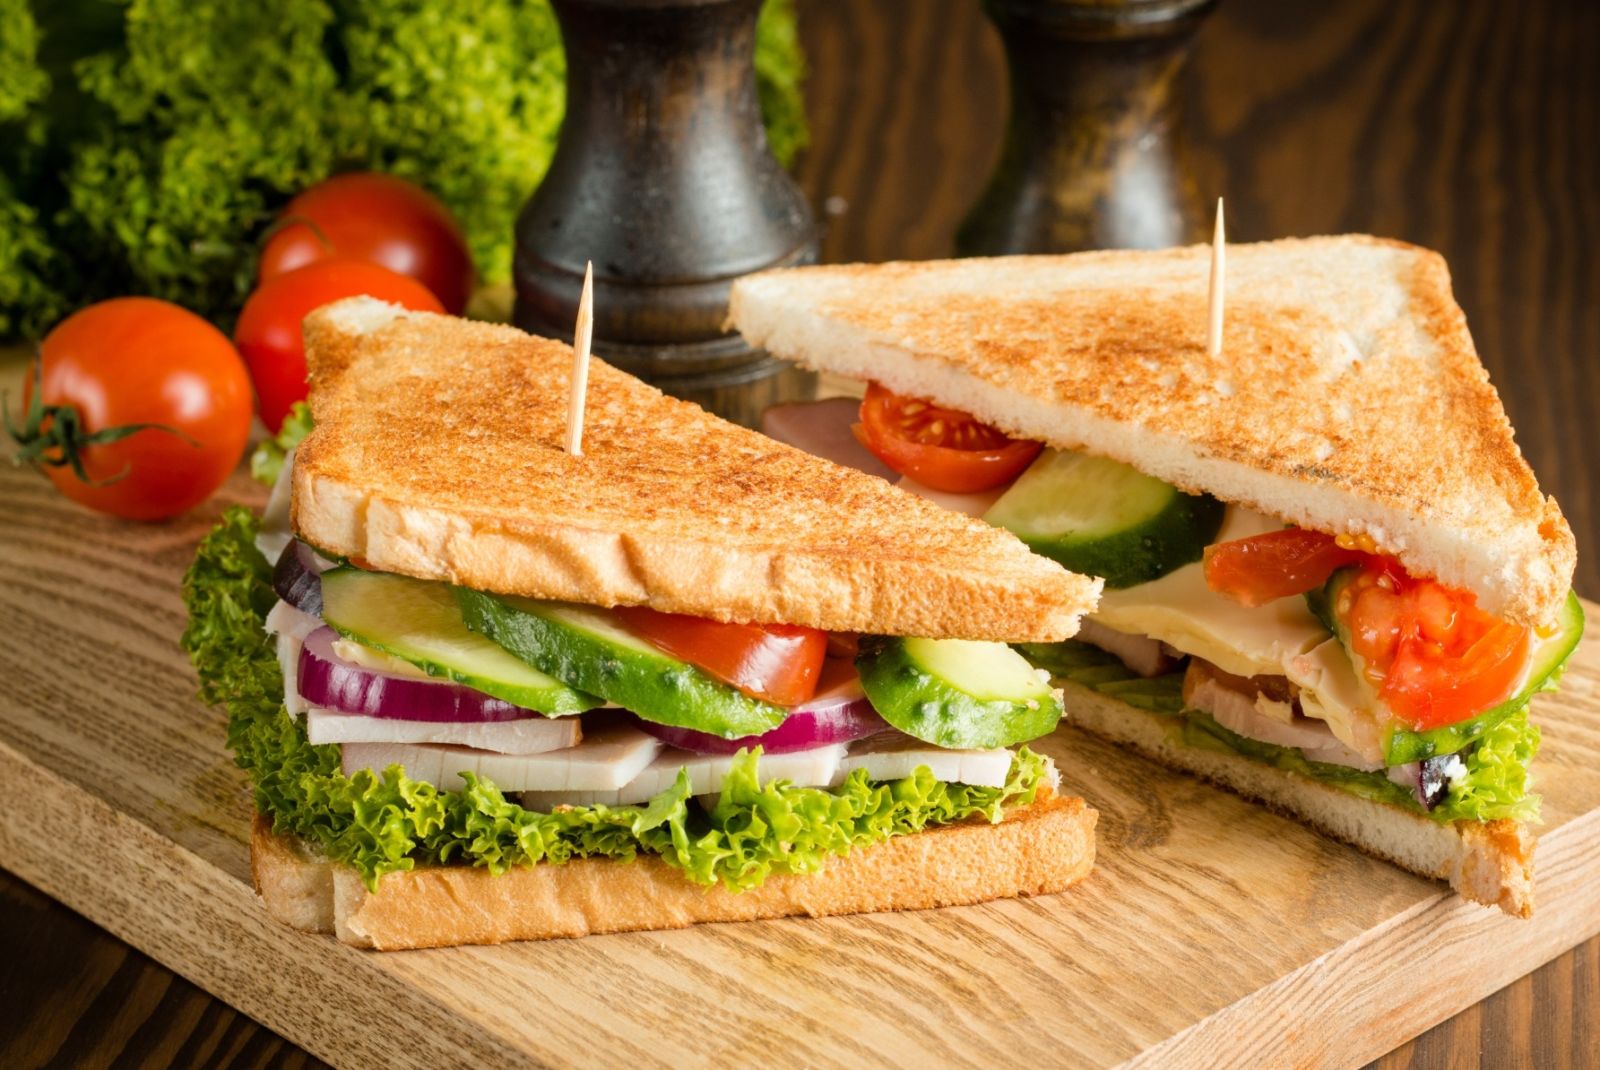 Bánh mì sandwich cung cấp nguồn dinh dưỡng dồi dào giúp cung cấp năng lượng cho cơ thể